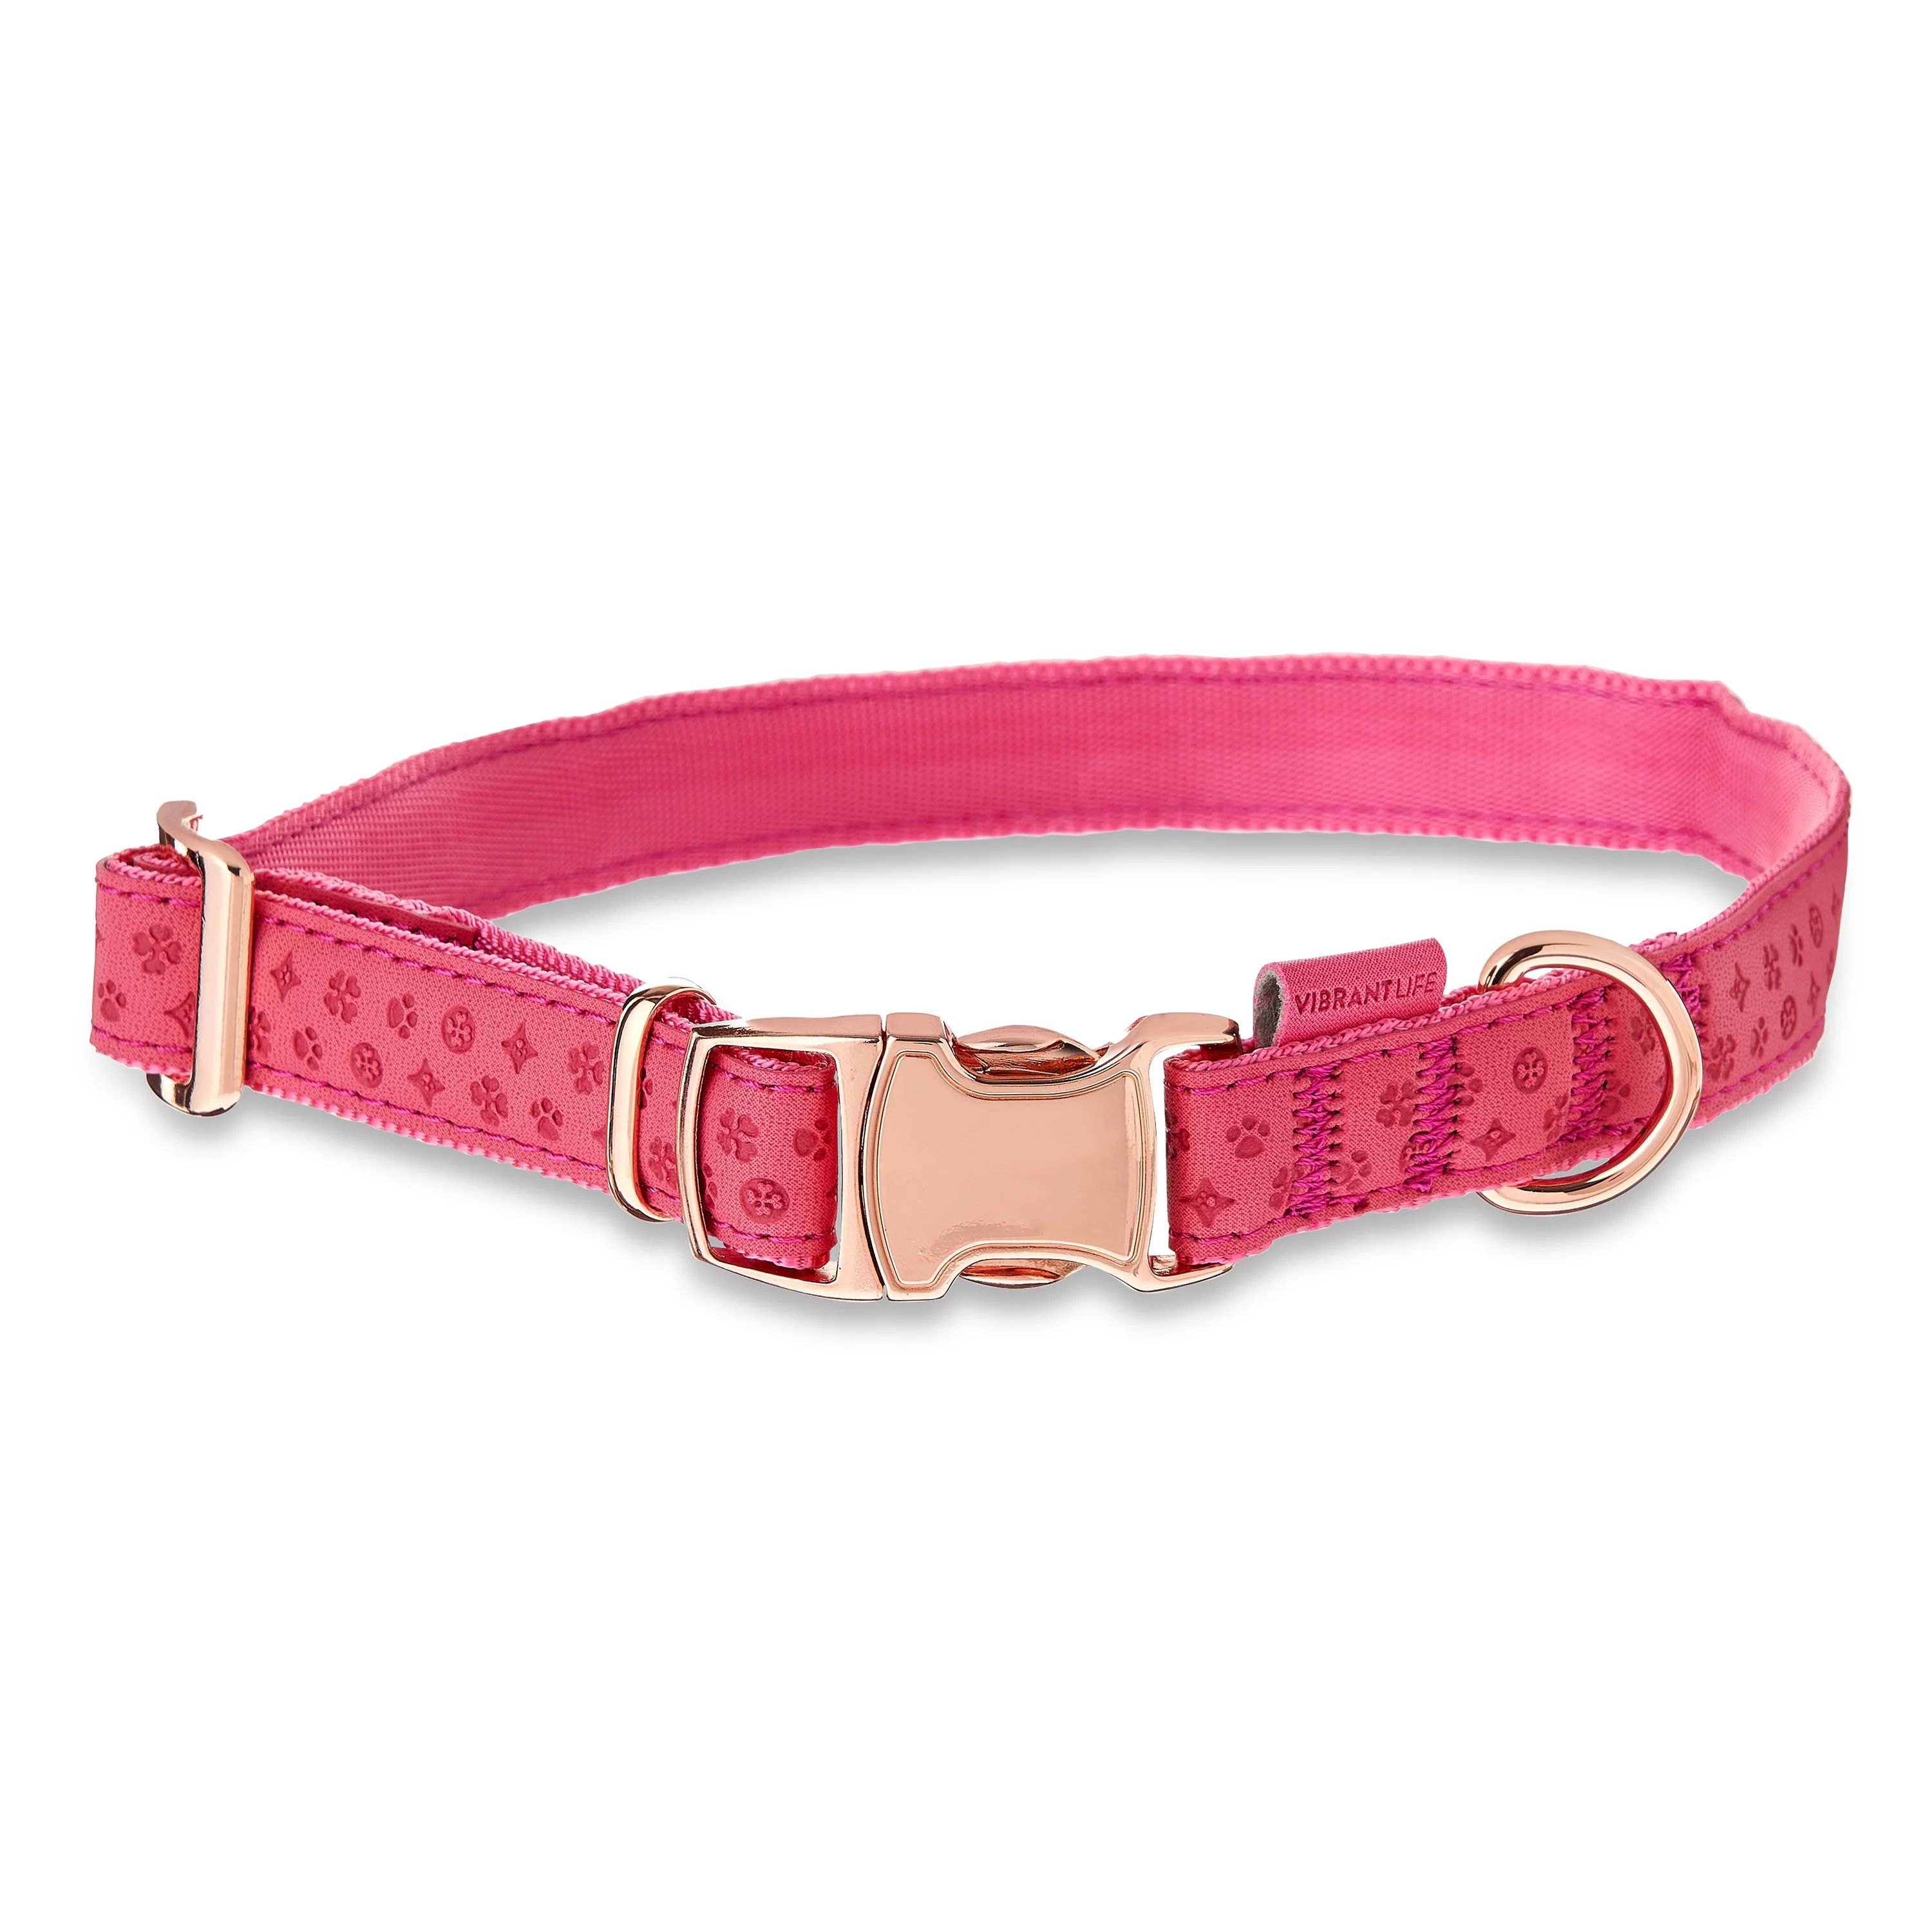 Vibrant Life Embossed Adjustable Dog Collar, Raspberry Pink, Medium | Walmart (US)